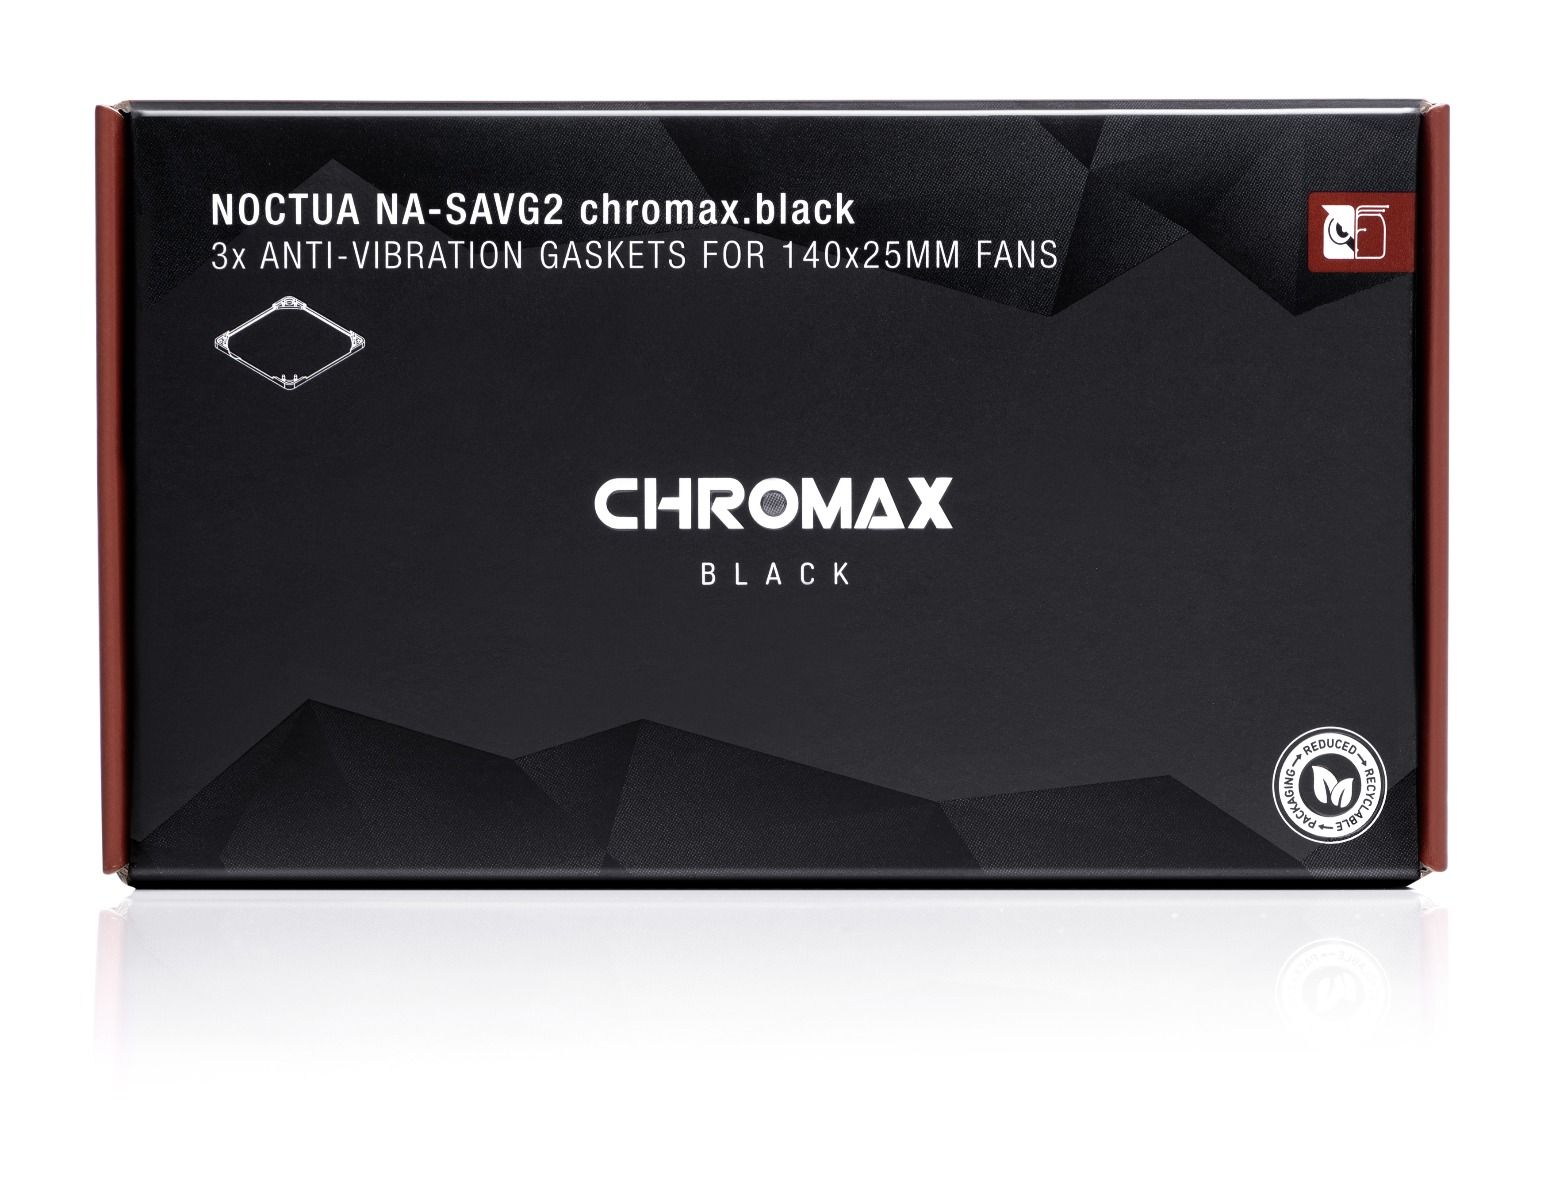 Ventilátor kiegészítő NOCTUA NA-SAVG2 chromax.black vibráció csökkentő 14cm